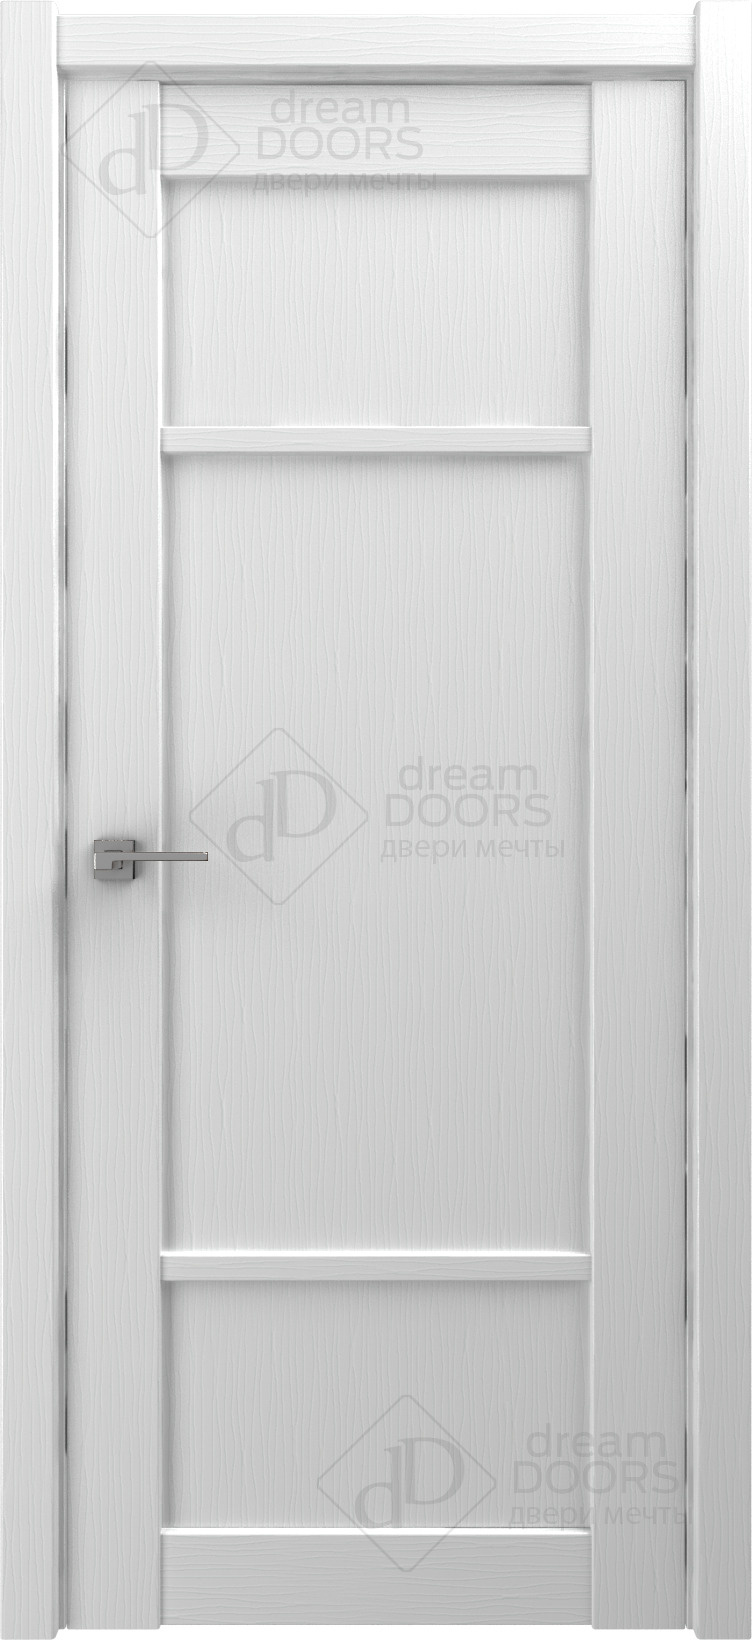 Dream Doors Межкомнатная дверь V25, арт. 18242 - фото №2